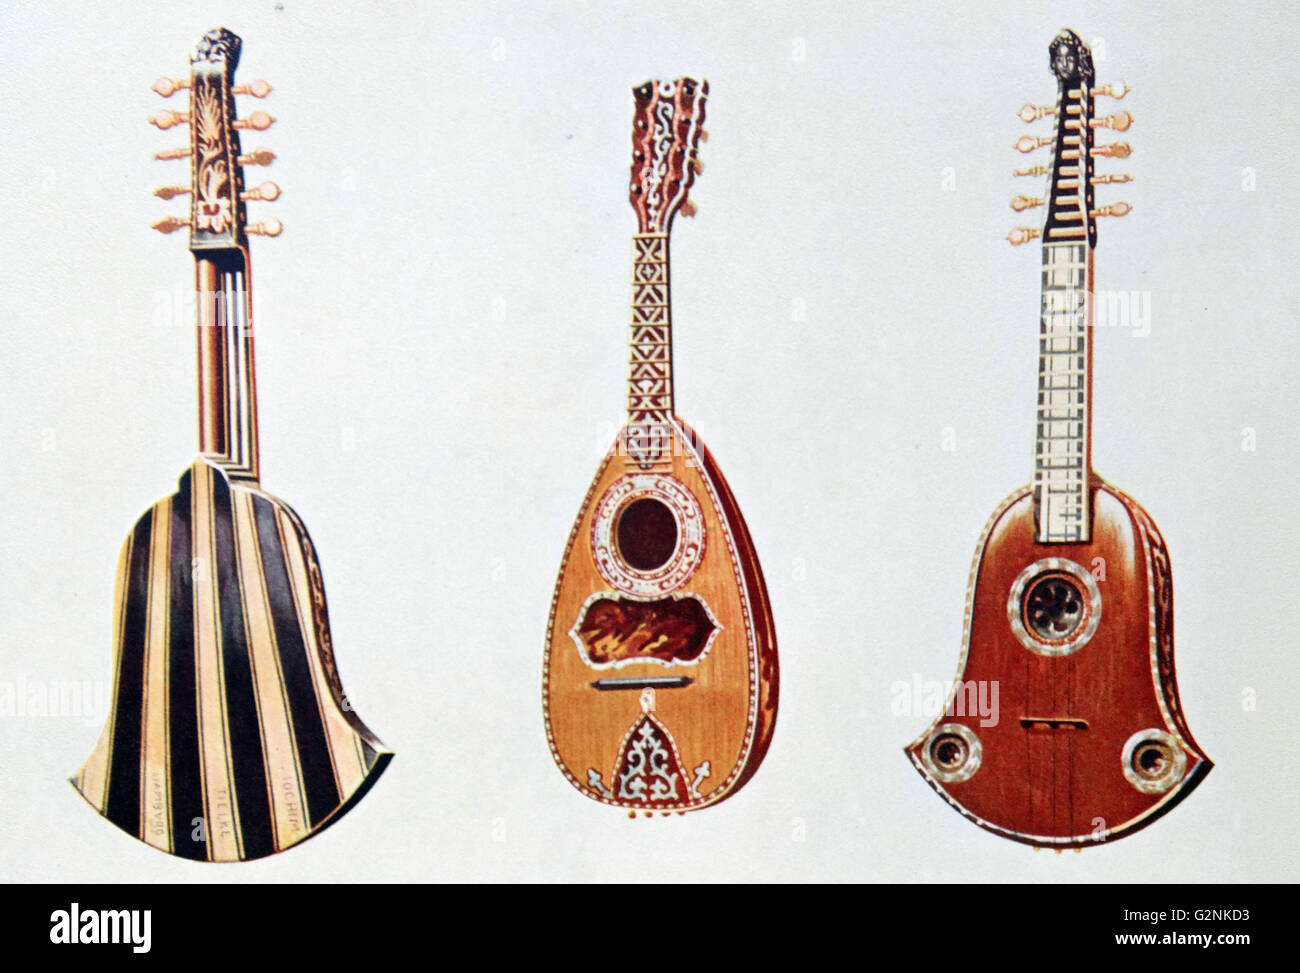 Quinterna y mandolín. La Quinterna (Chiterna) es una guitarra italiano y  antiguamente era utilizado por los más humildes de la música. La mandolina  (mandolin italiano) es una especie de laúd alto Fotografía